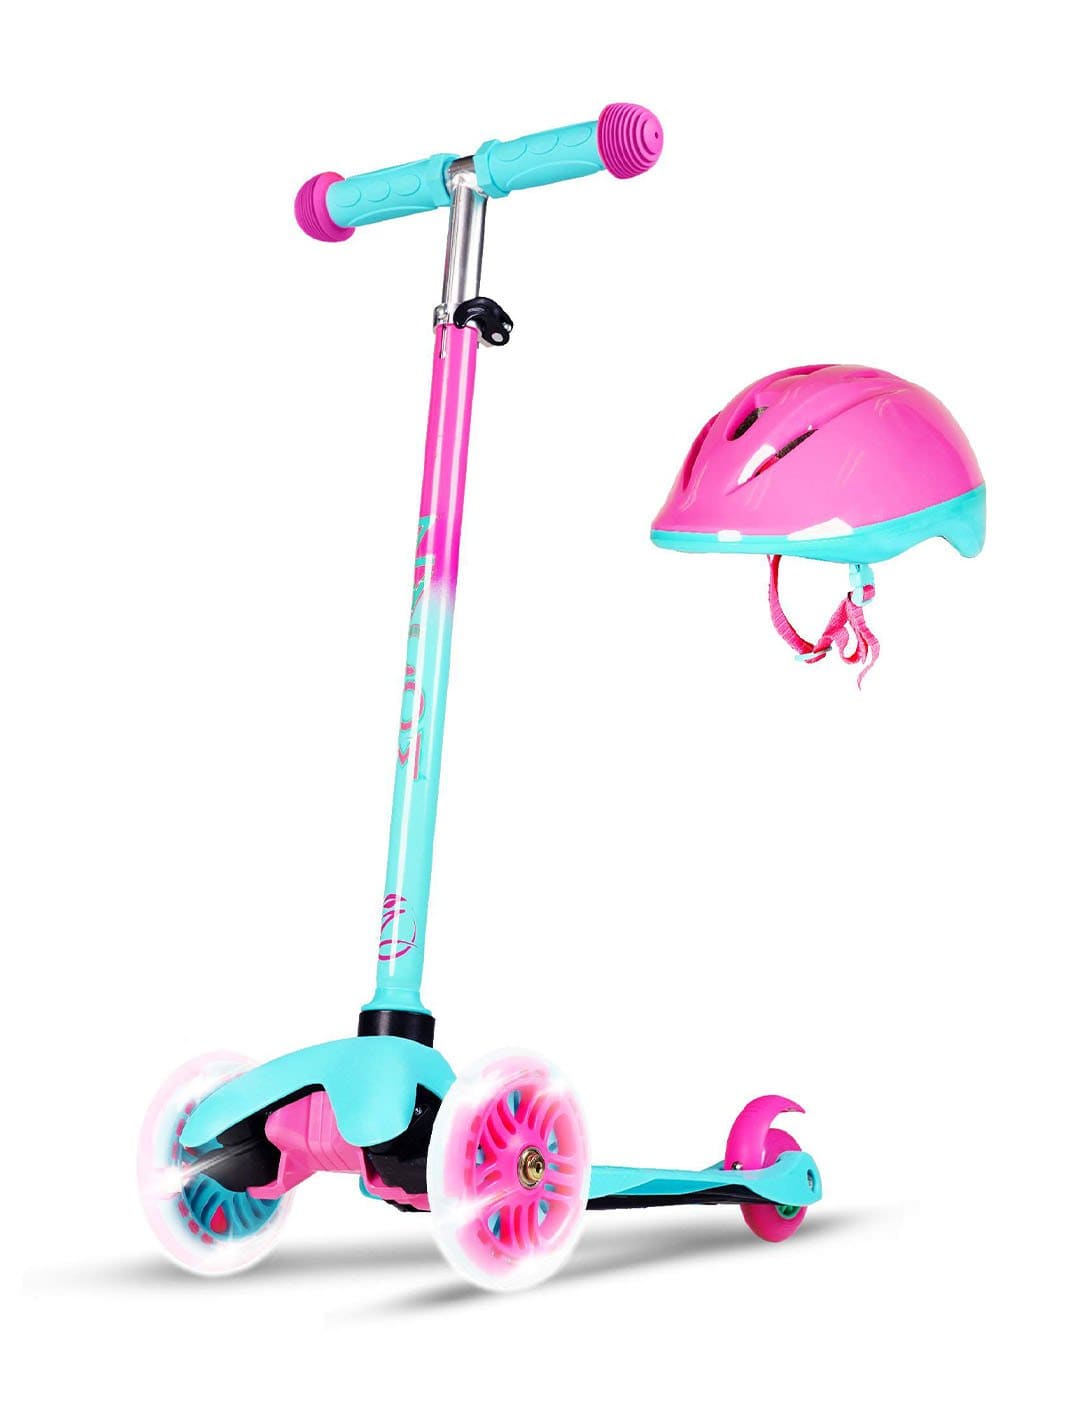 Zycom Zipper Scooter & Helmet - Teal Pink